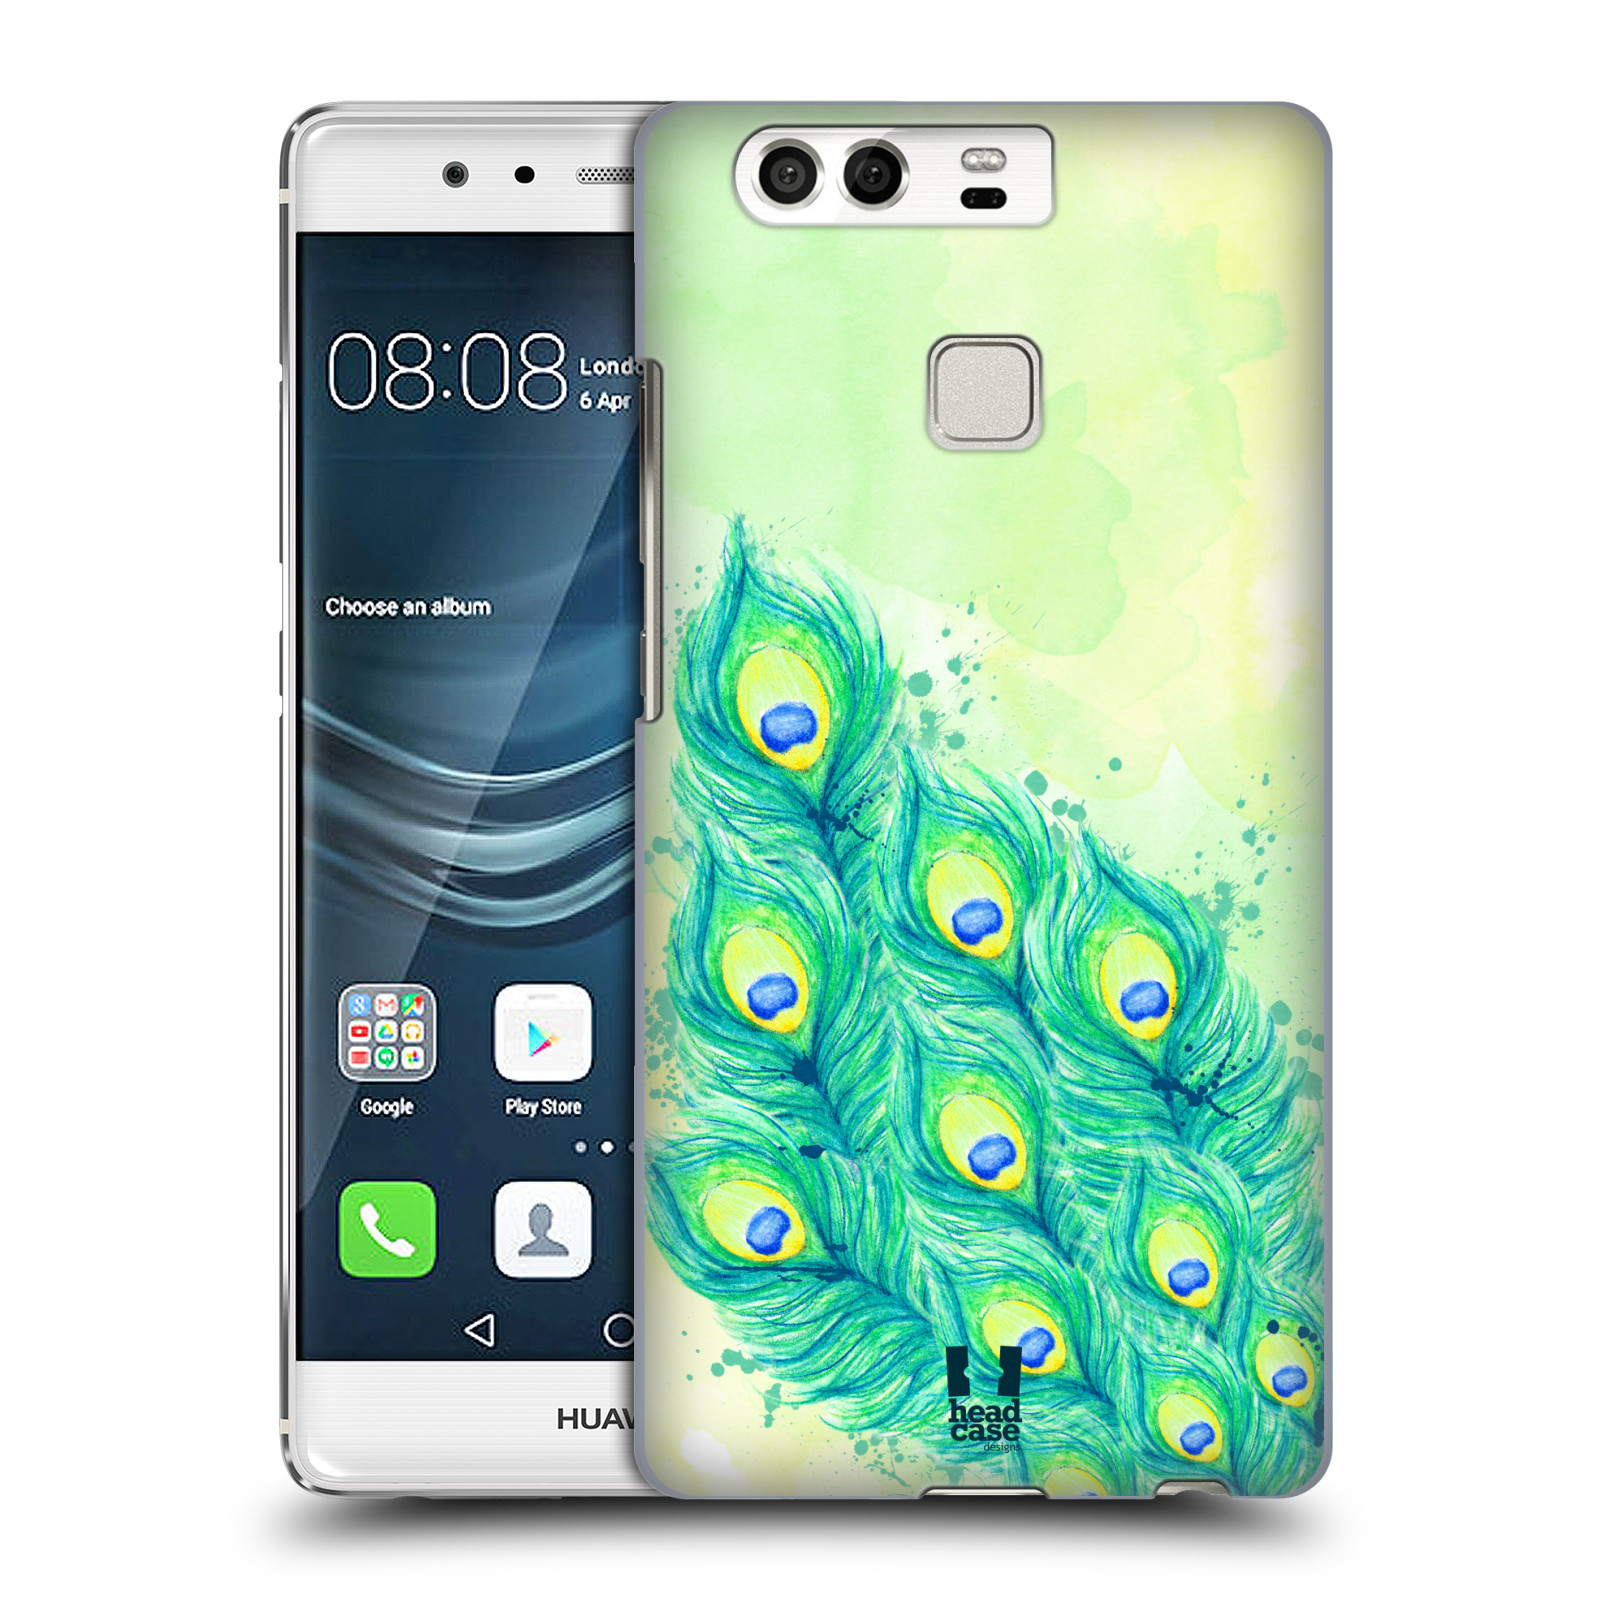 HEAD CASE plastový obal na mobil Huawei P9 / P9 DUAL SIM vzor Paví pírka barevná MODRÁ A ZELENÁ